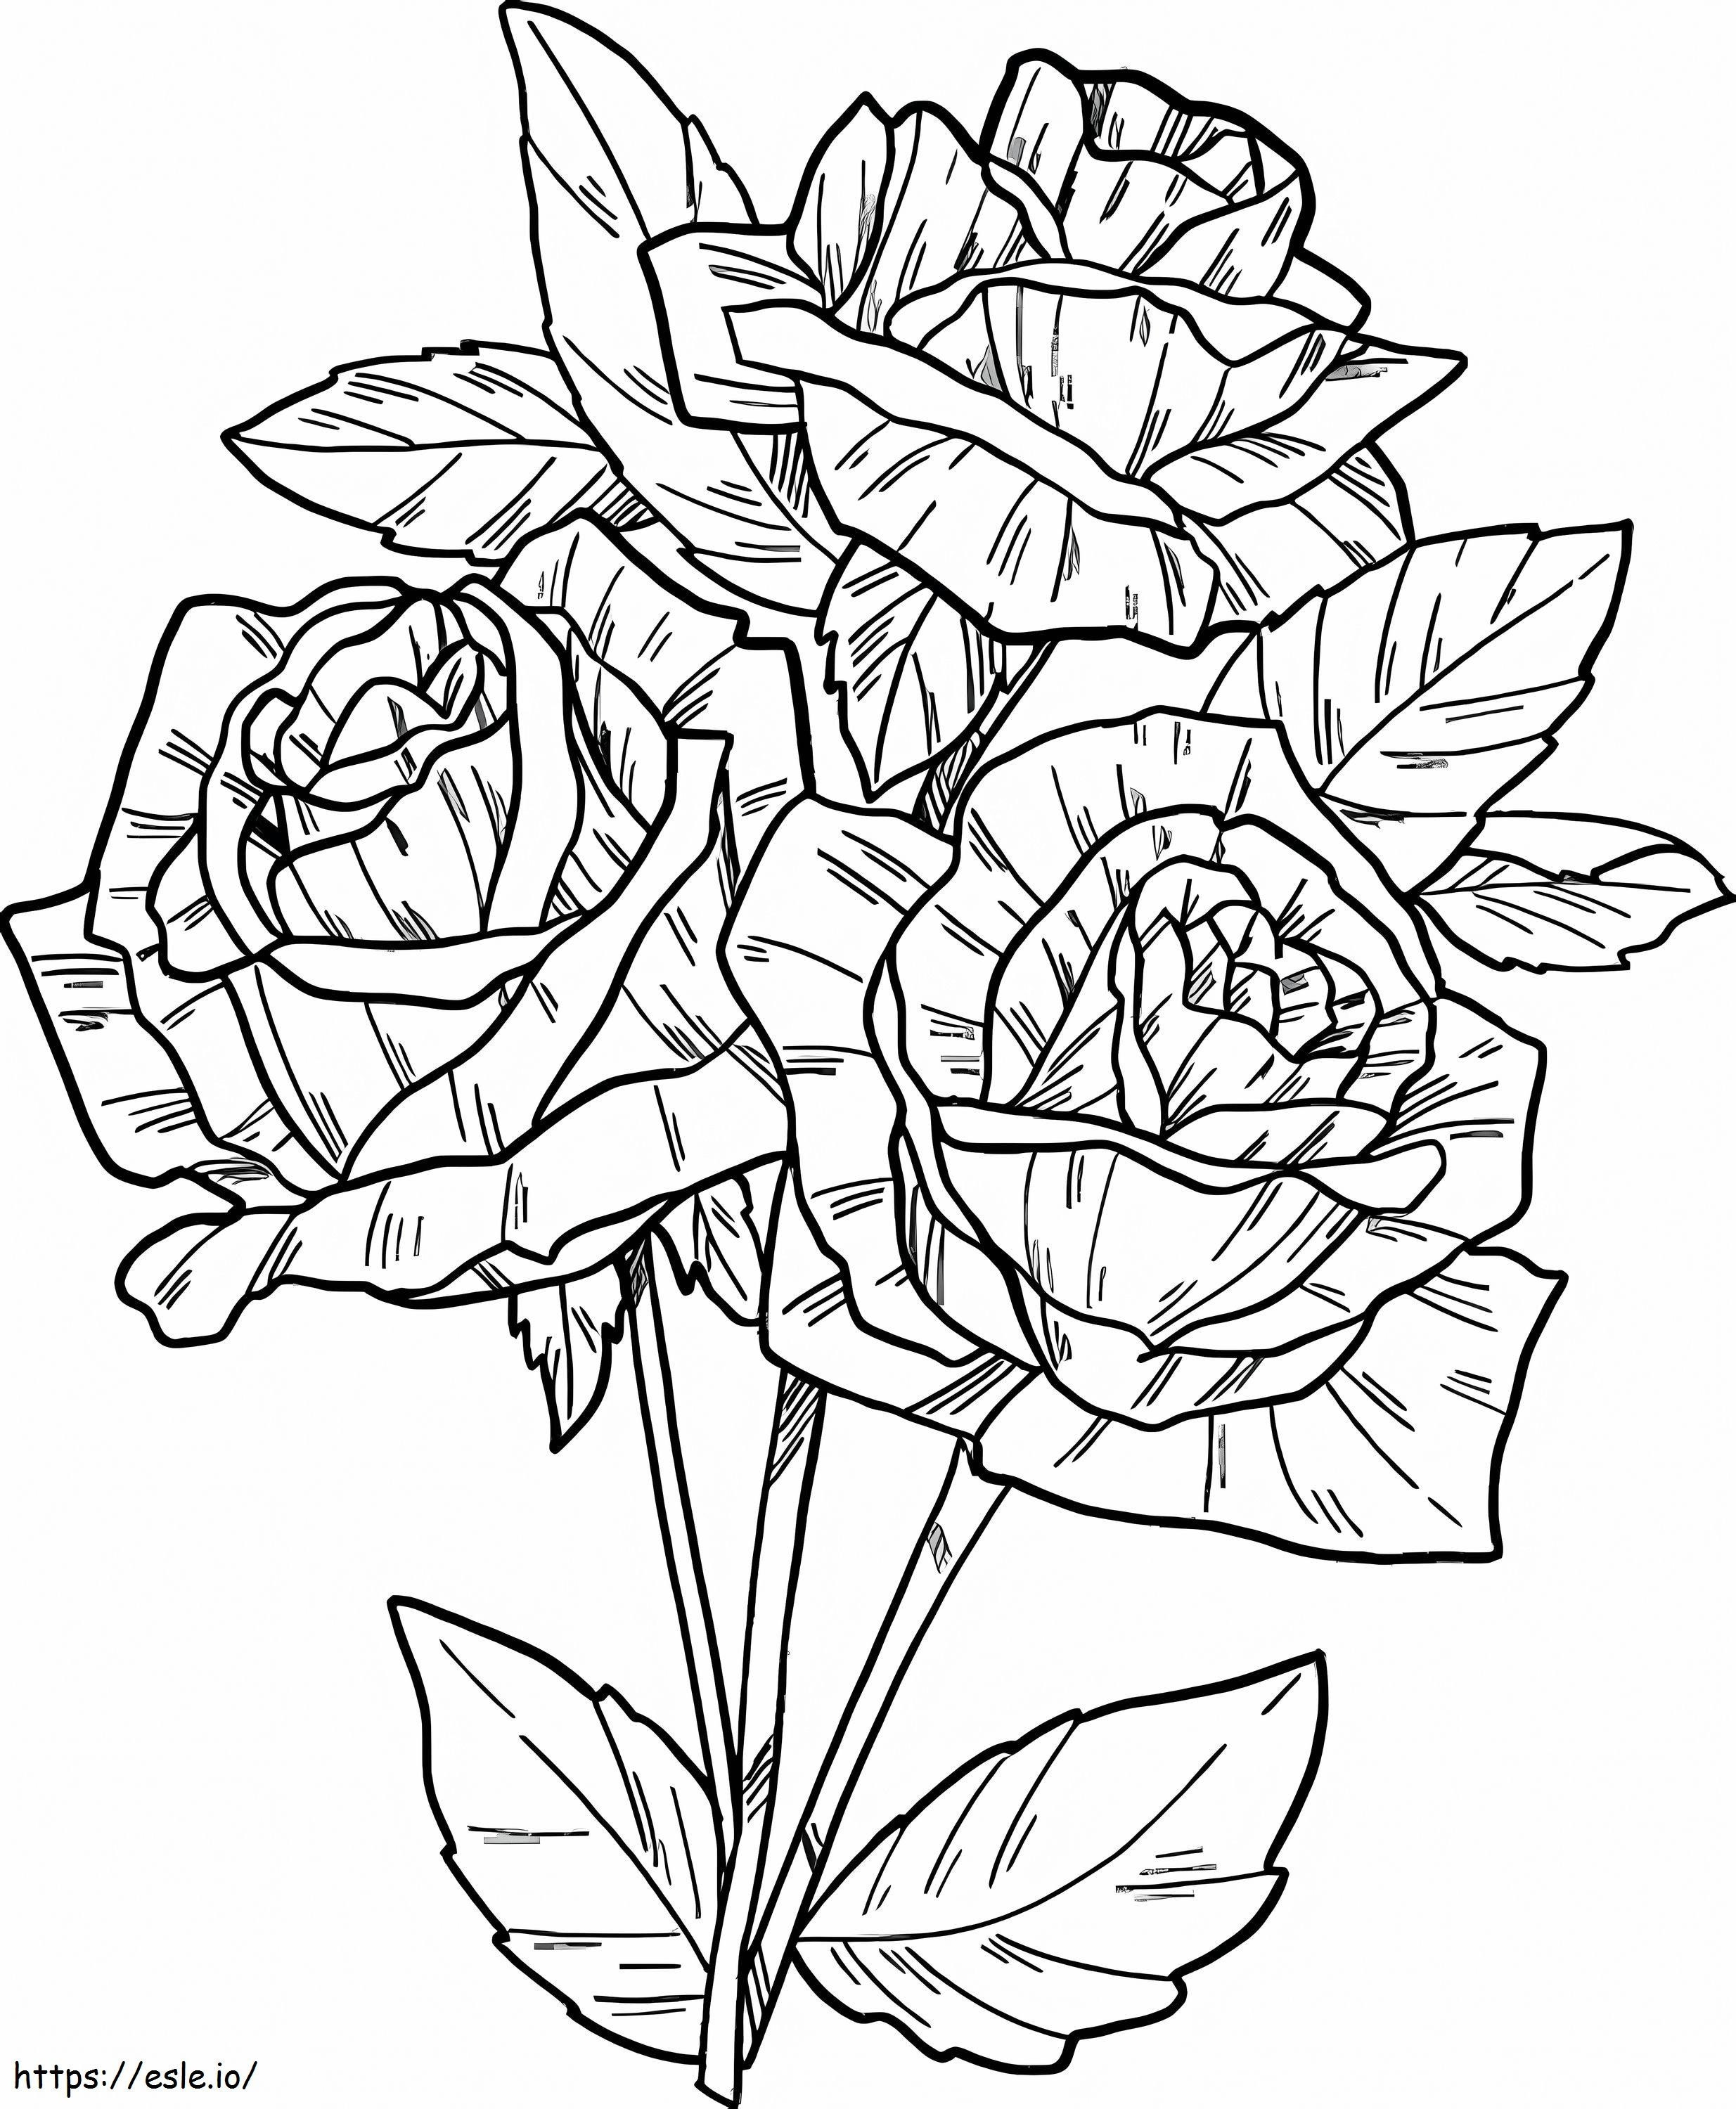 Coloriage Main Dessiner Rose à imprimer dessin